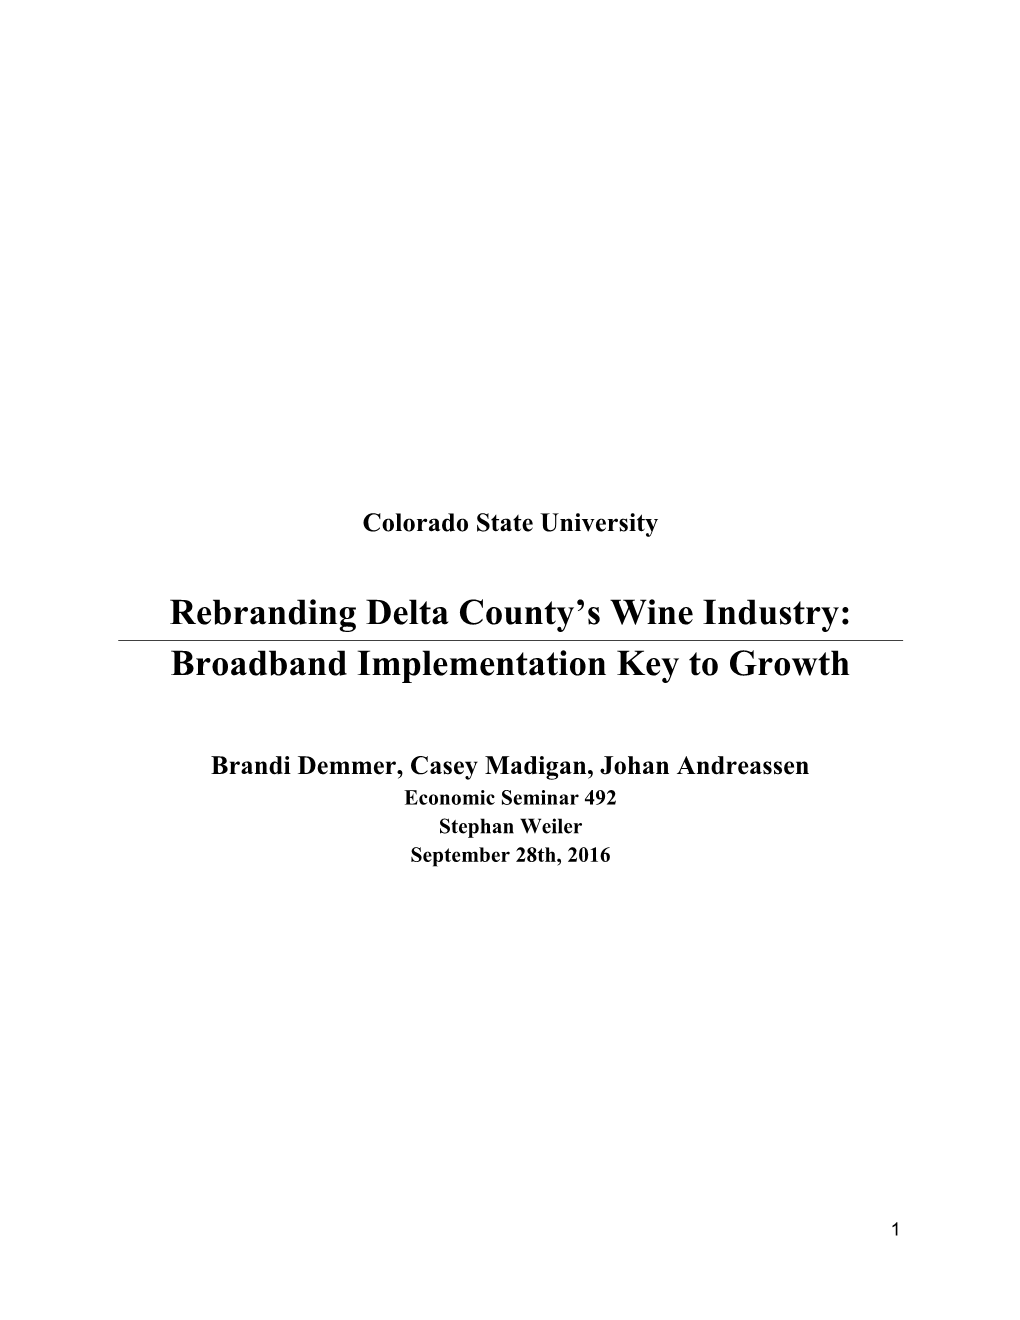 Rebranding Delta County's Wine Industry